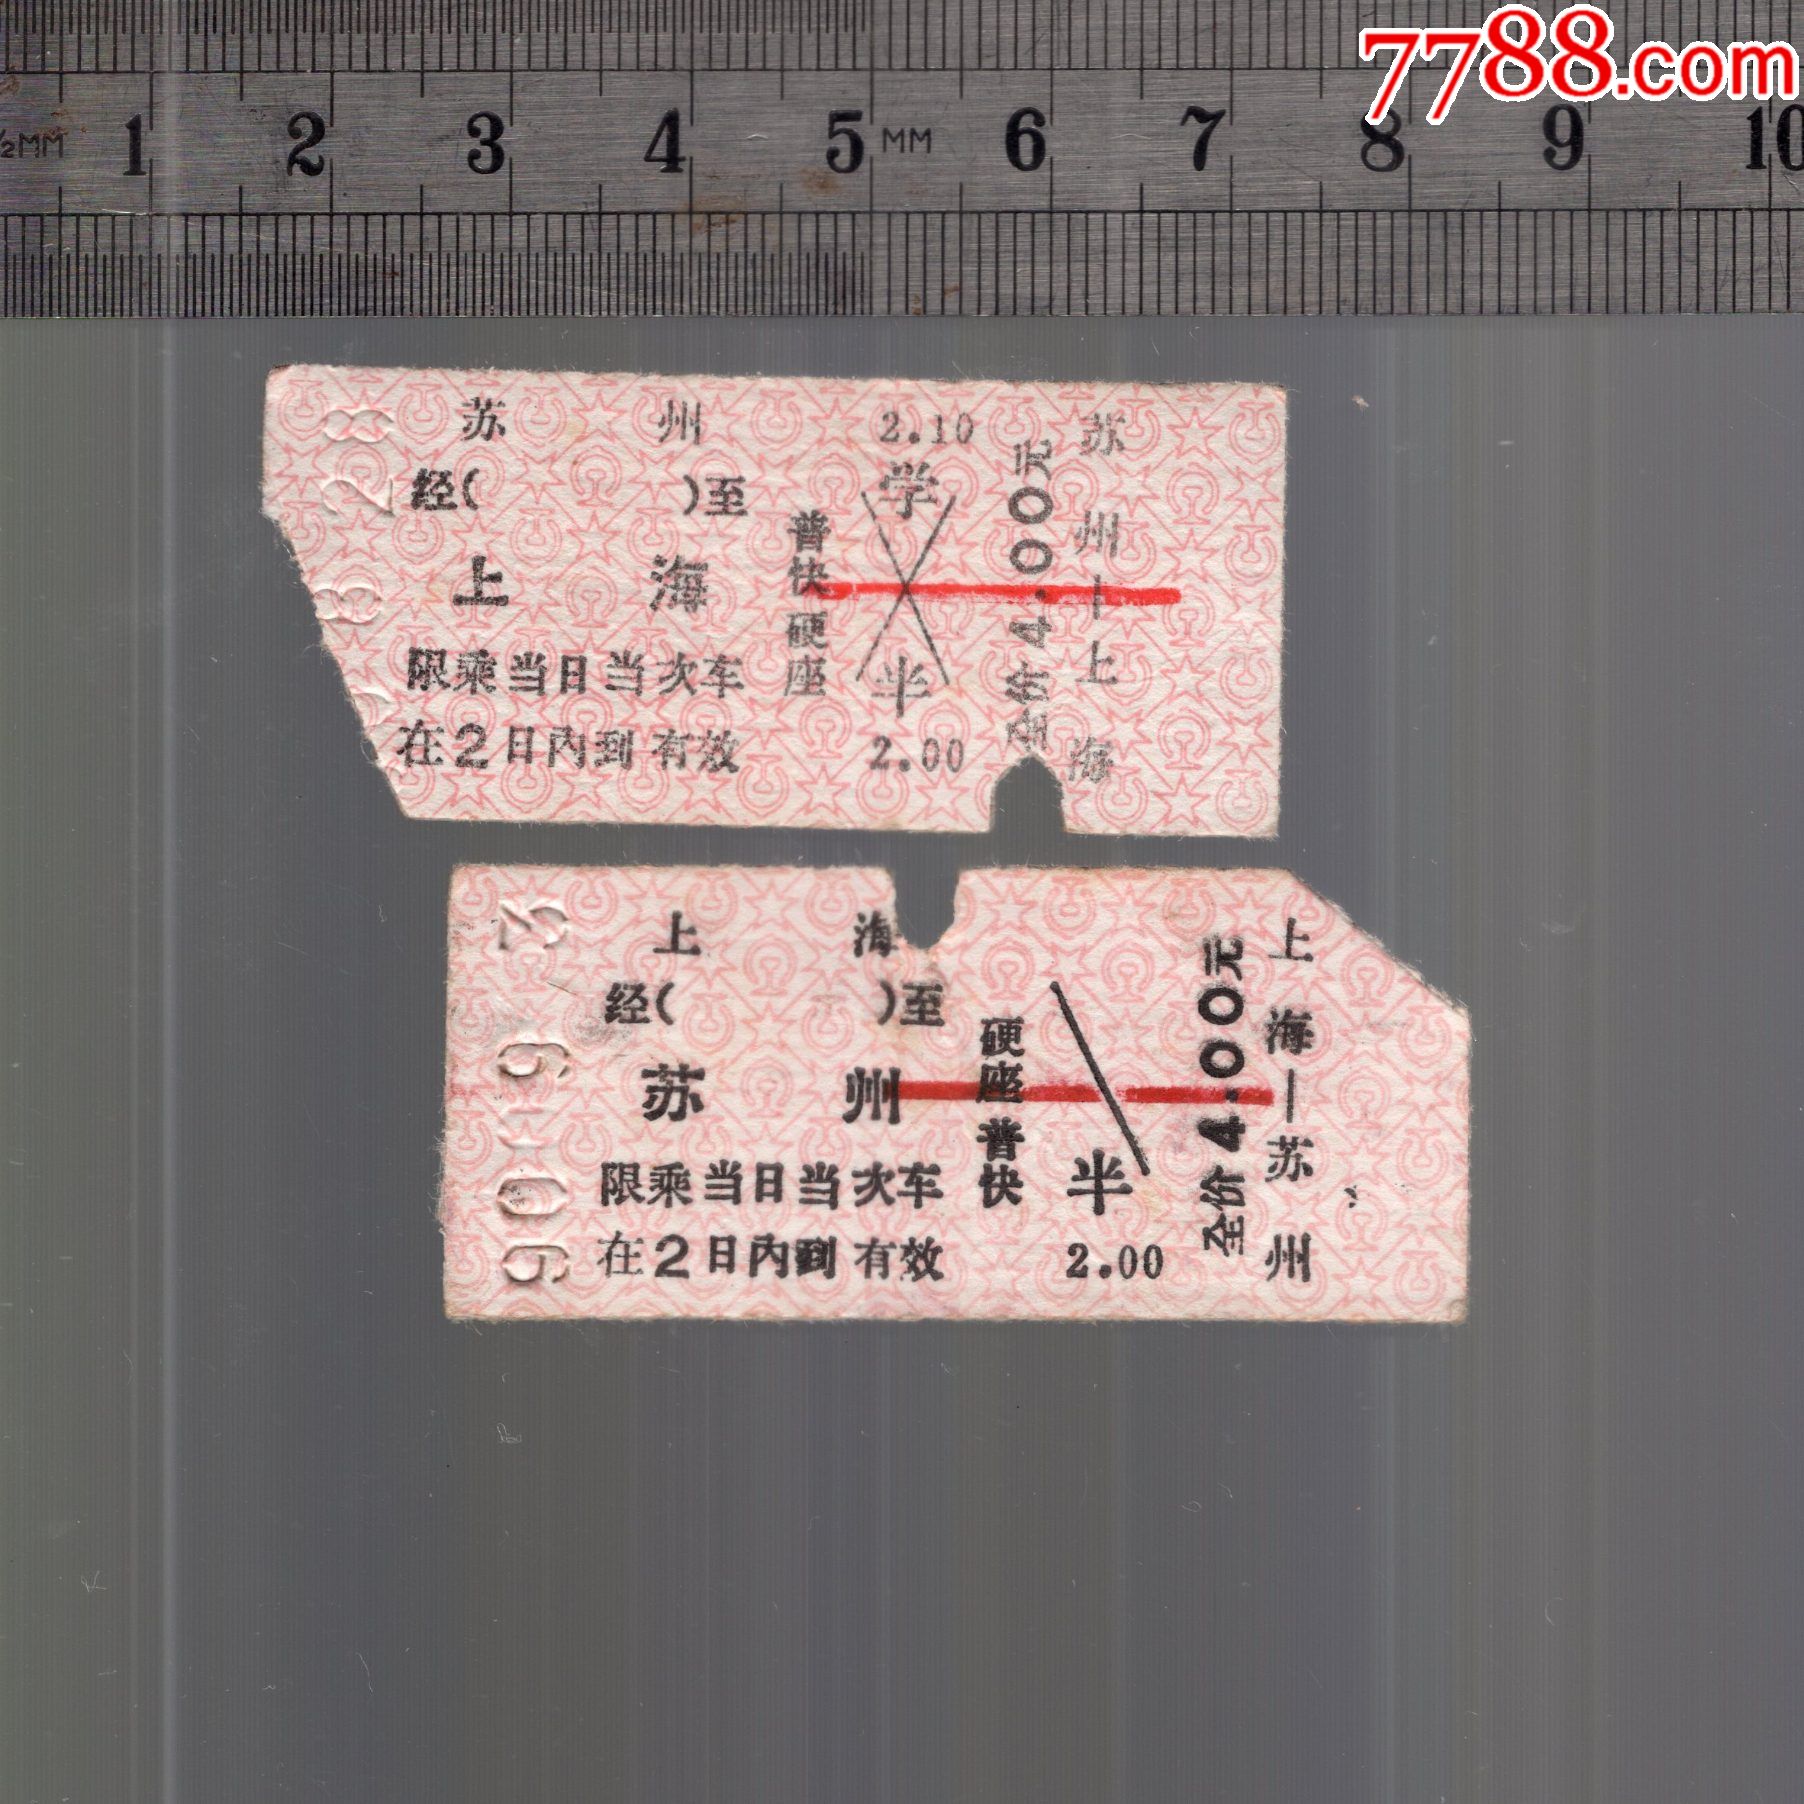 1990年老式硬纸火车票,上海至苏州,苏州至上海一对2张